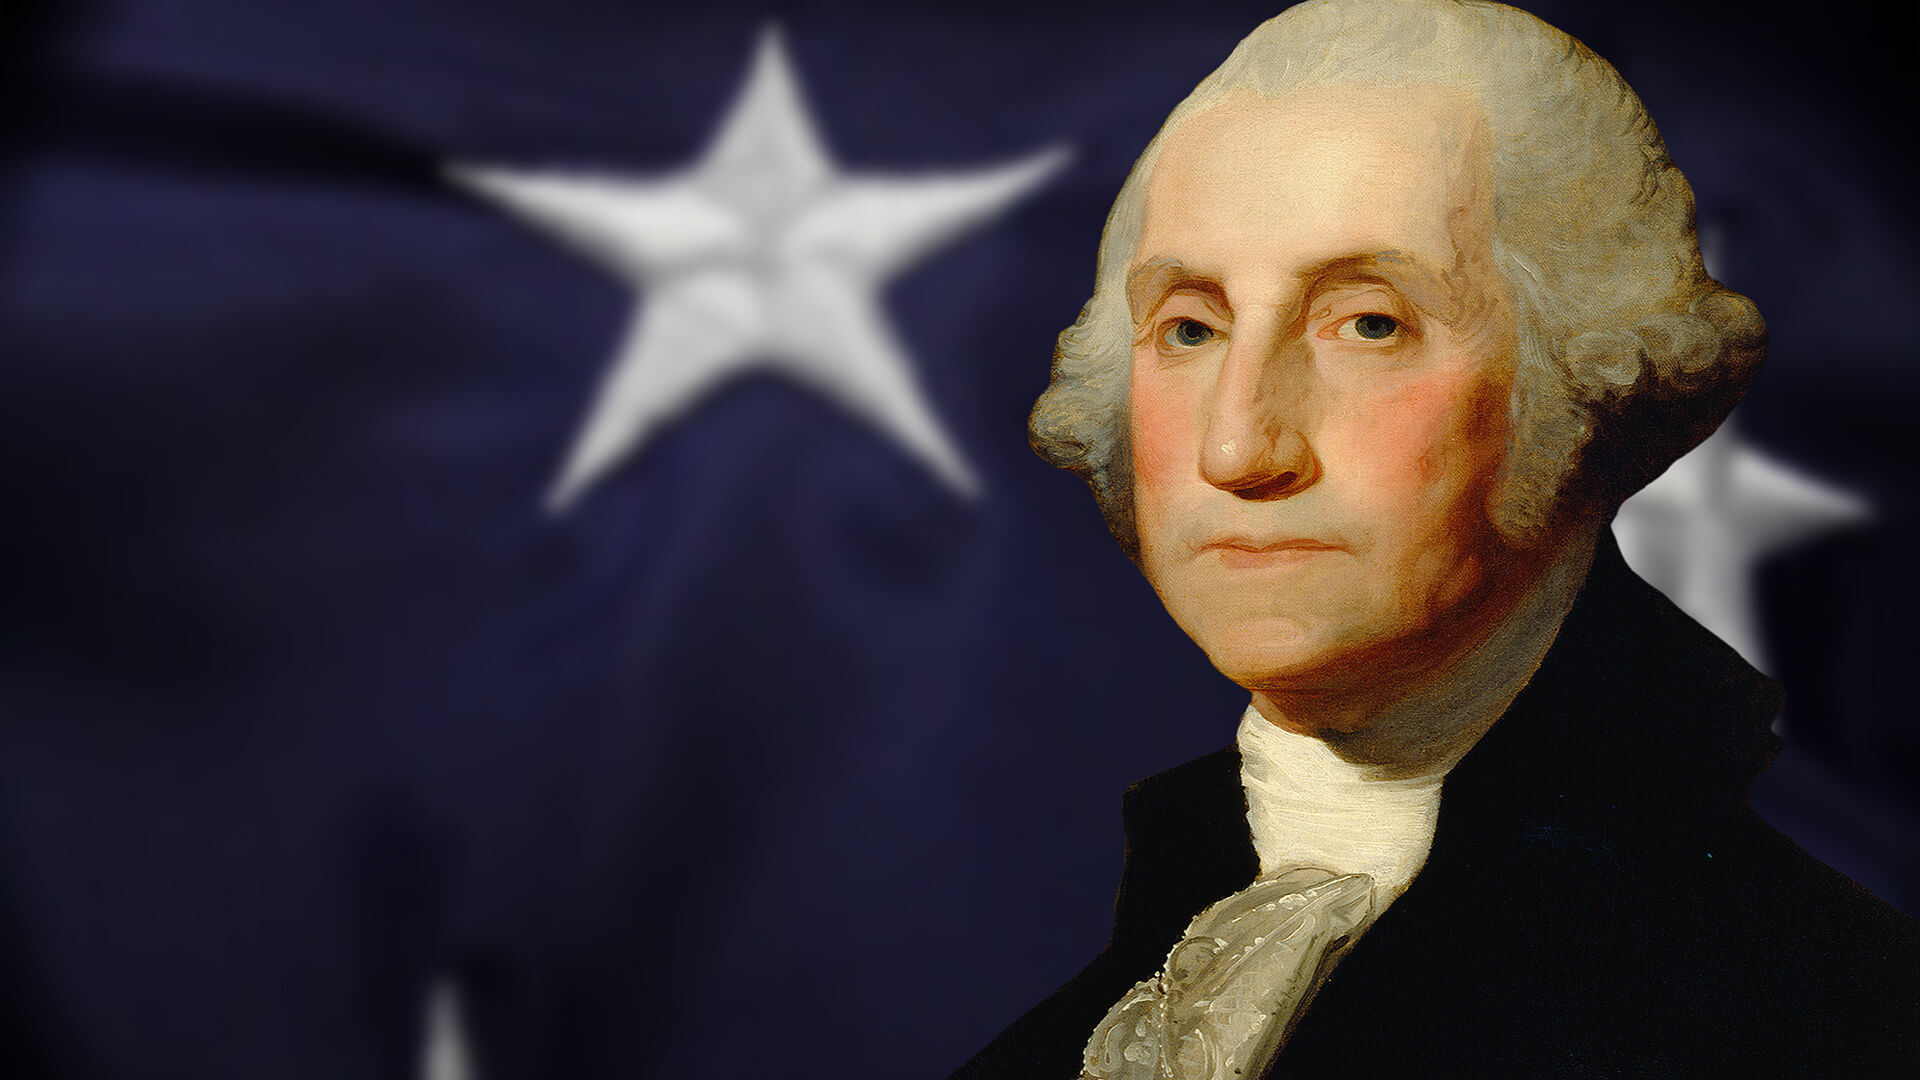 George Washington Biografía, historia de vida, carrera y presidencia